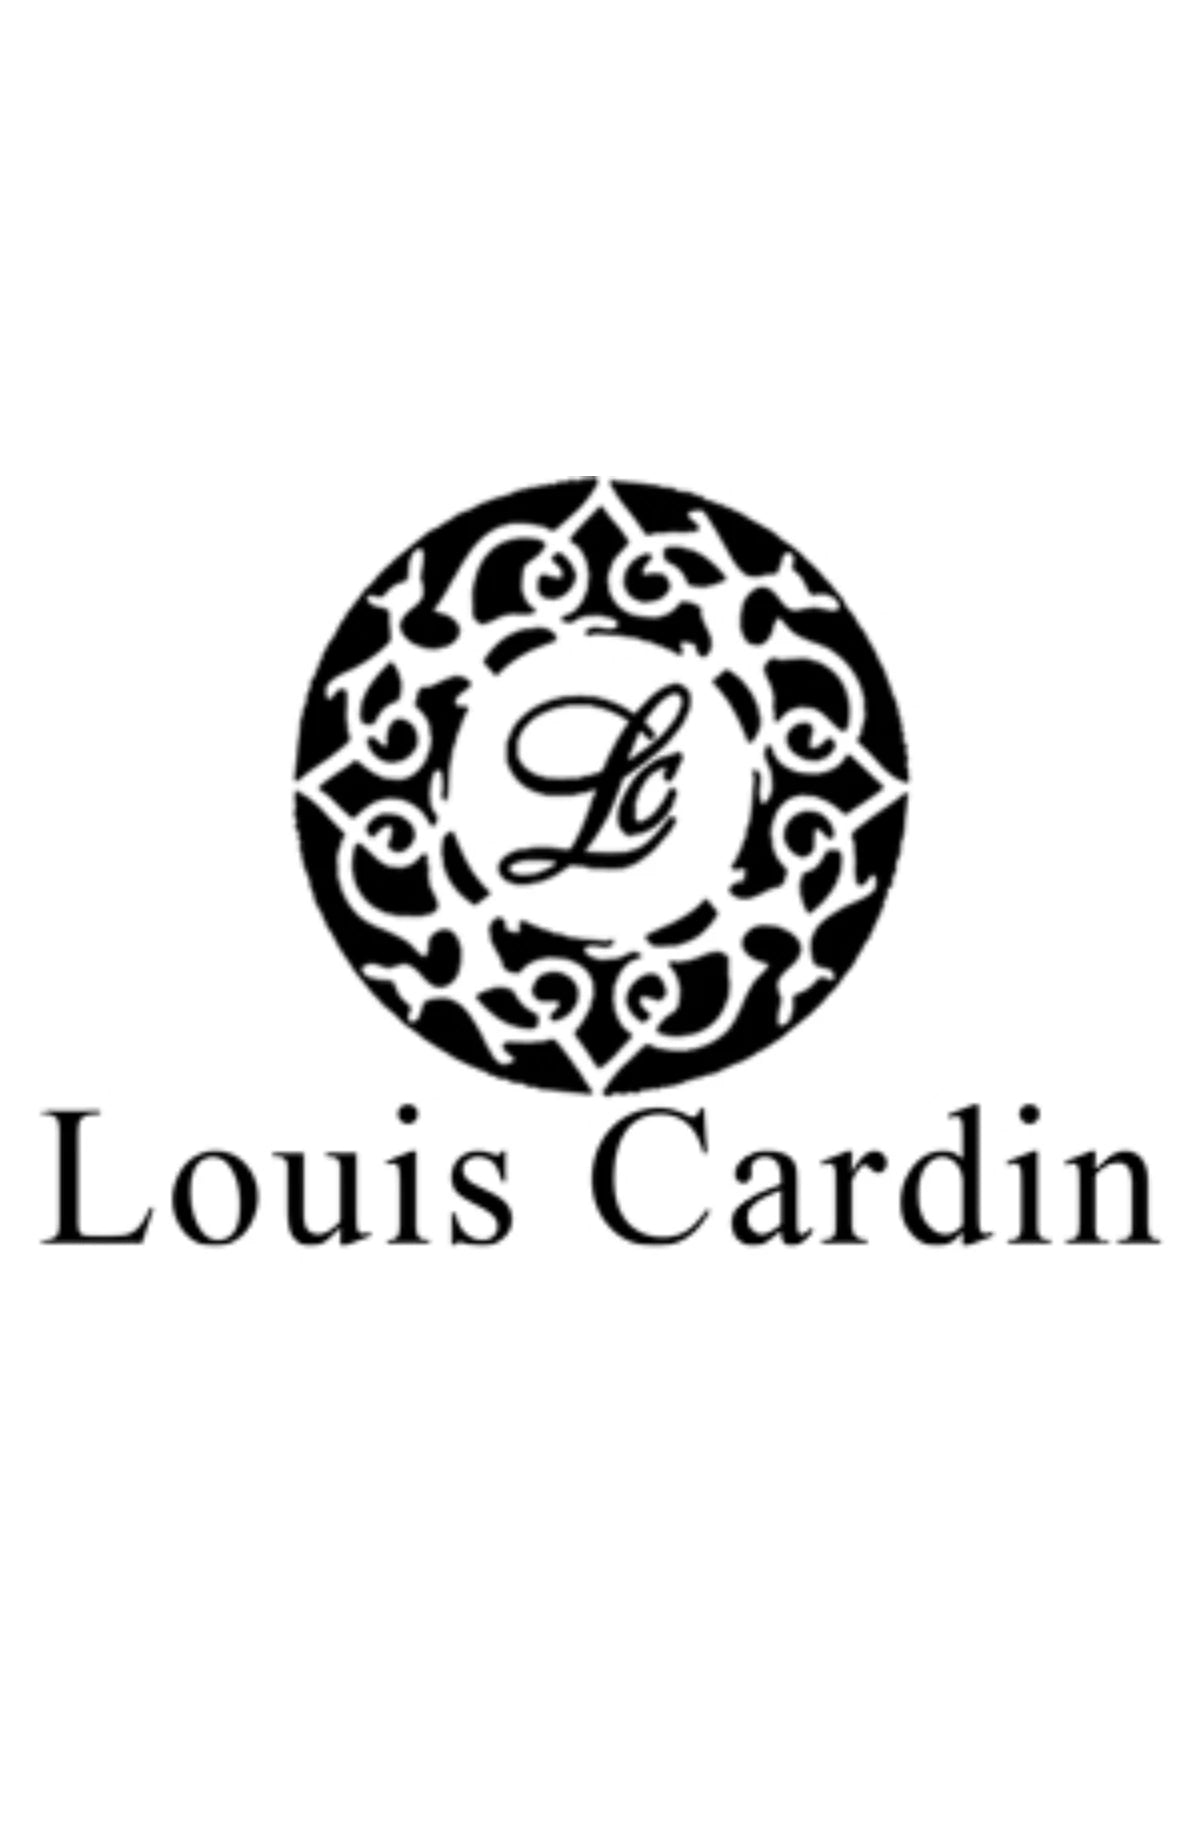 Louis Cardin | Fragancias Colombia